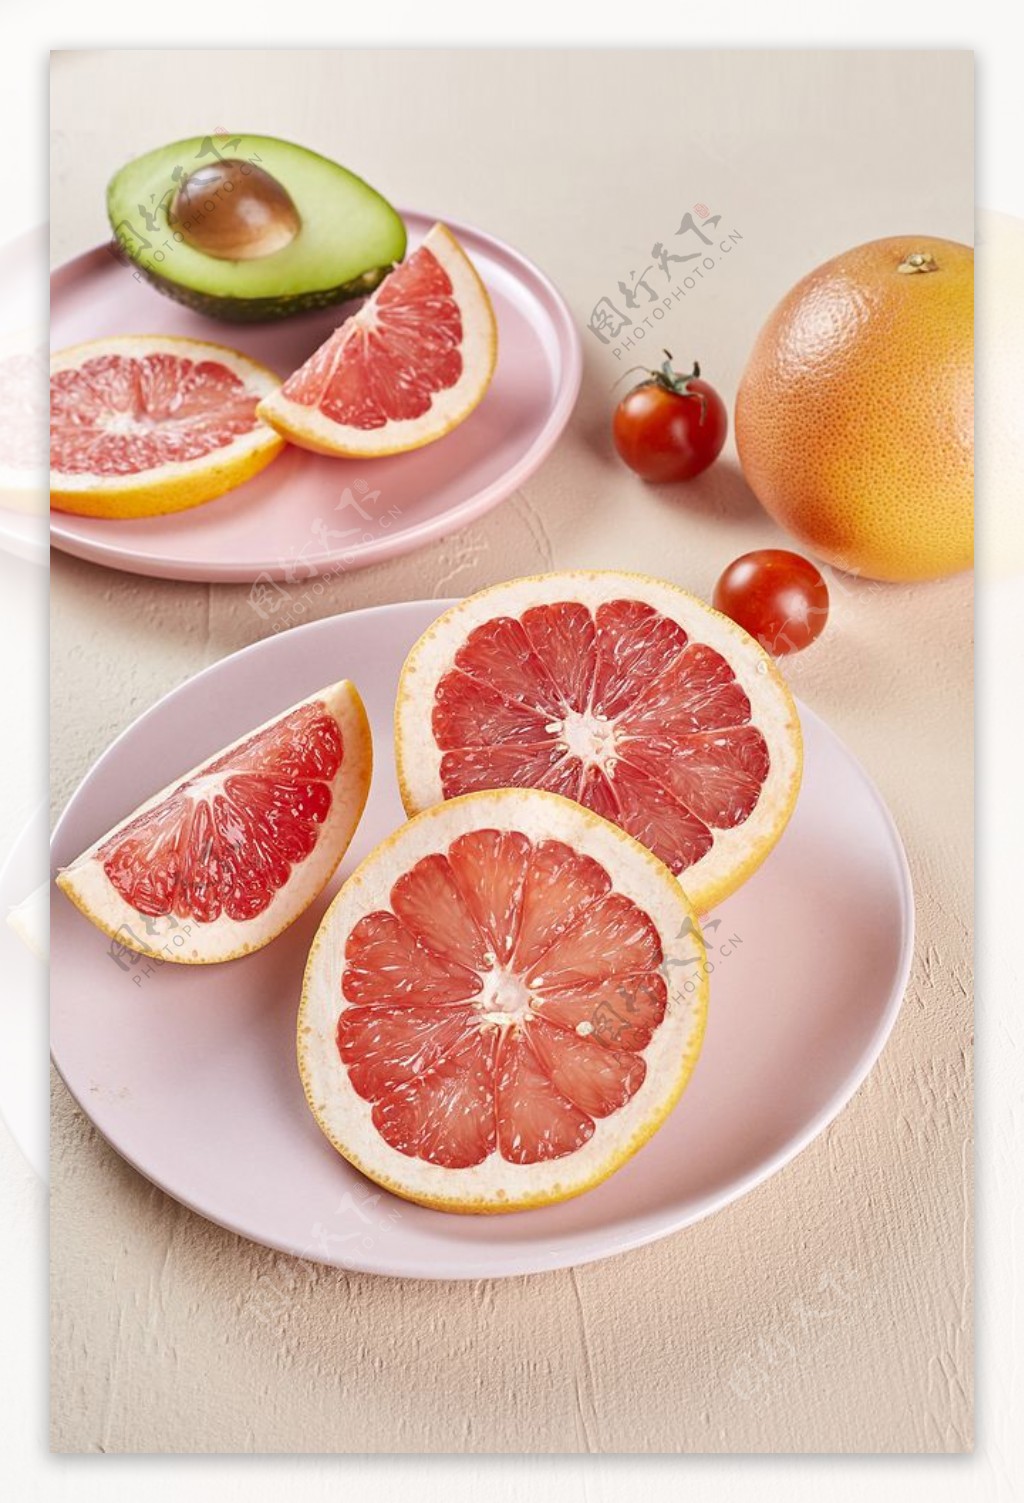 红柚子图片大全-红柚子高清图片下载-觅知网